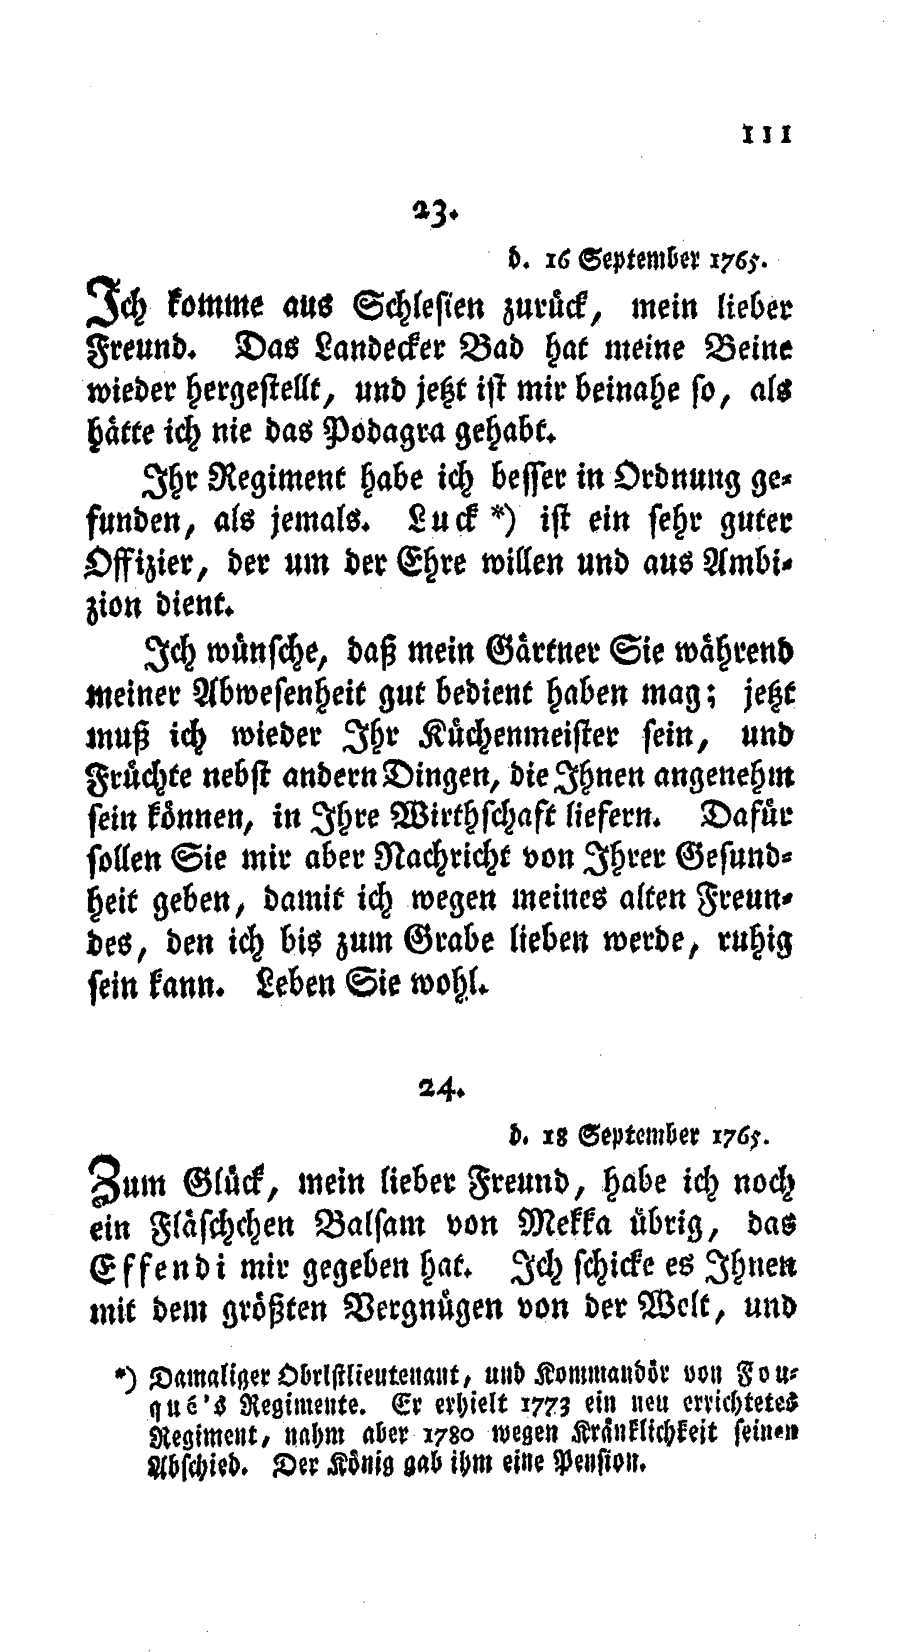 S. 111, Obj. 2